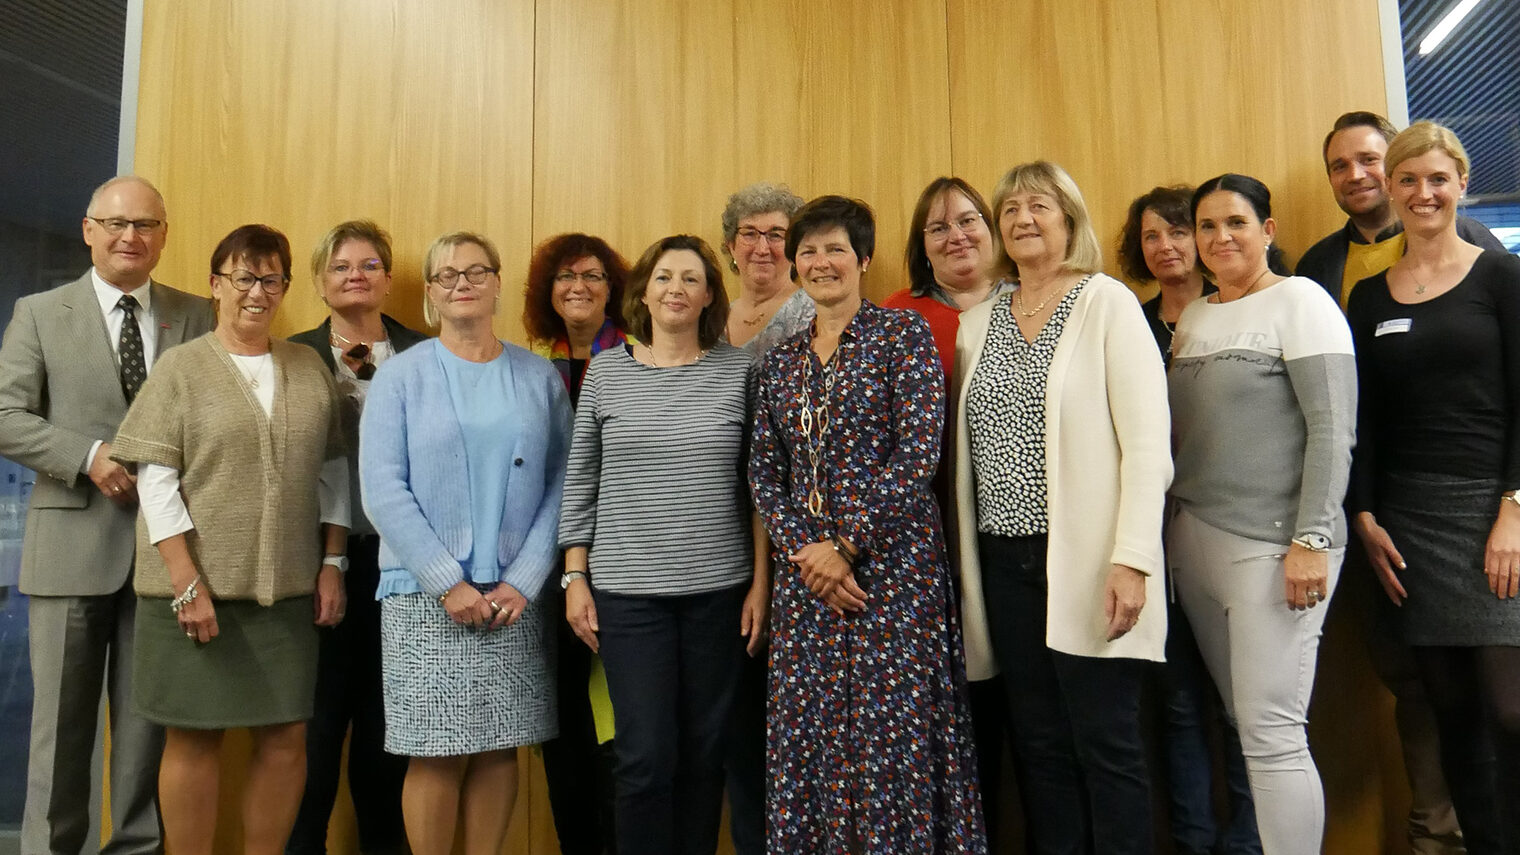 Gruppenbild der Unternehmerfrauen aus dem Bezirk der Handwerkskammer Konstanz.